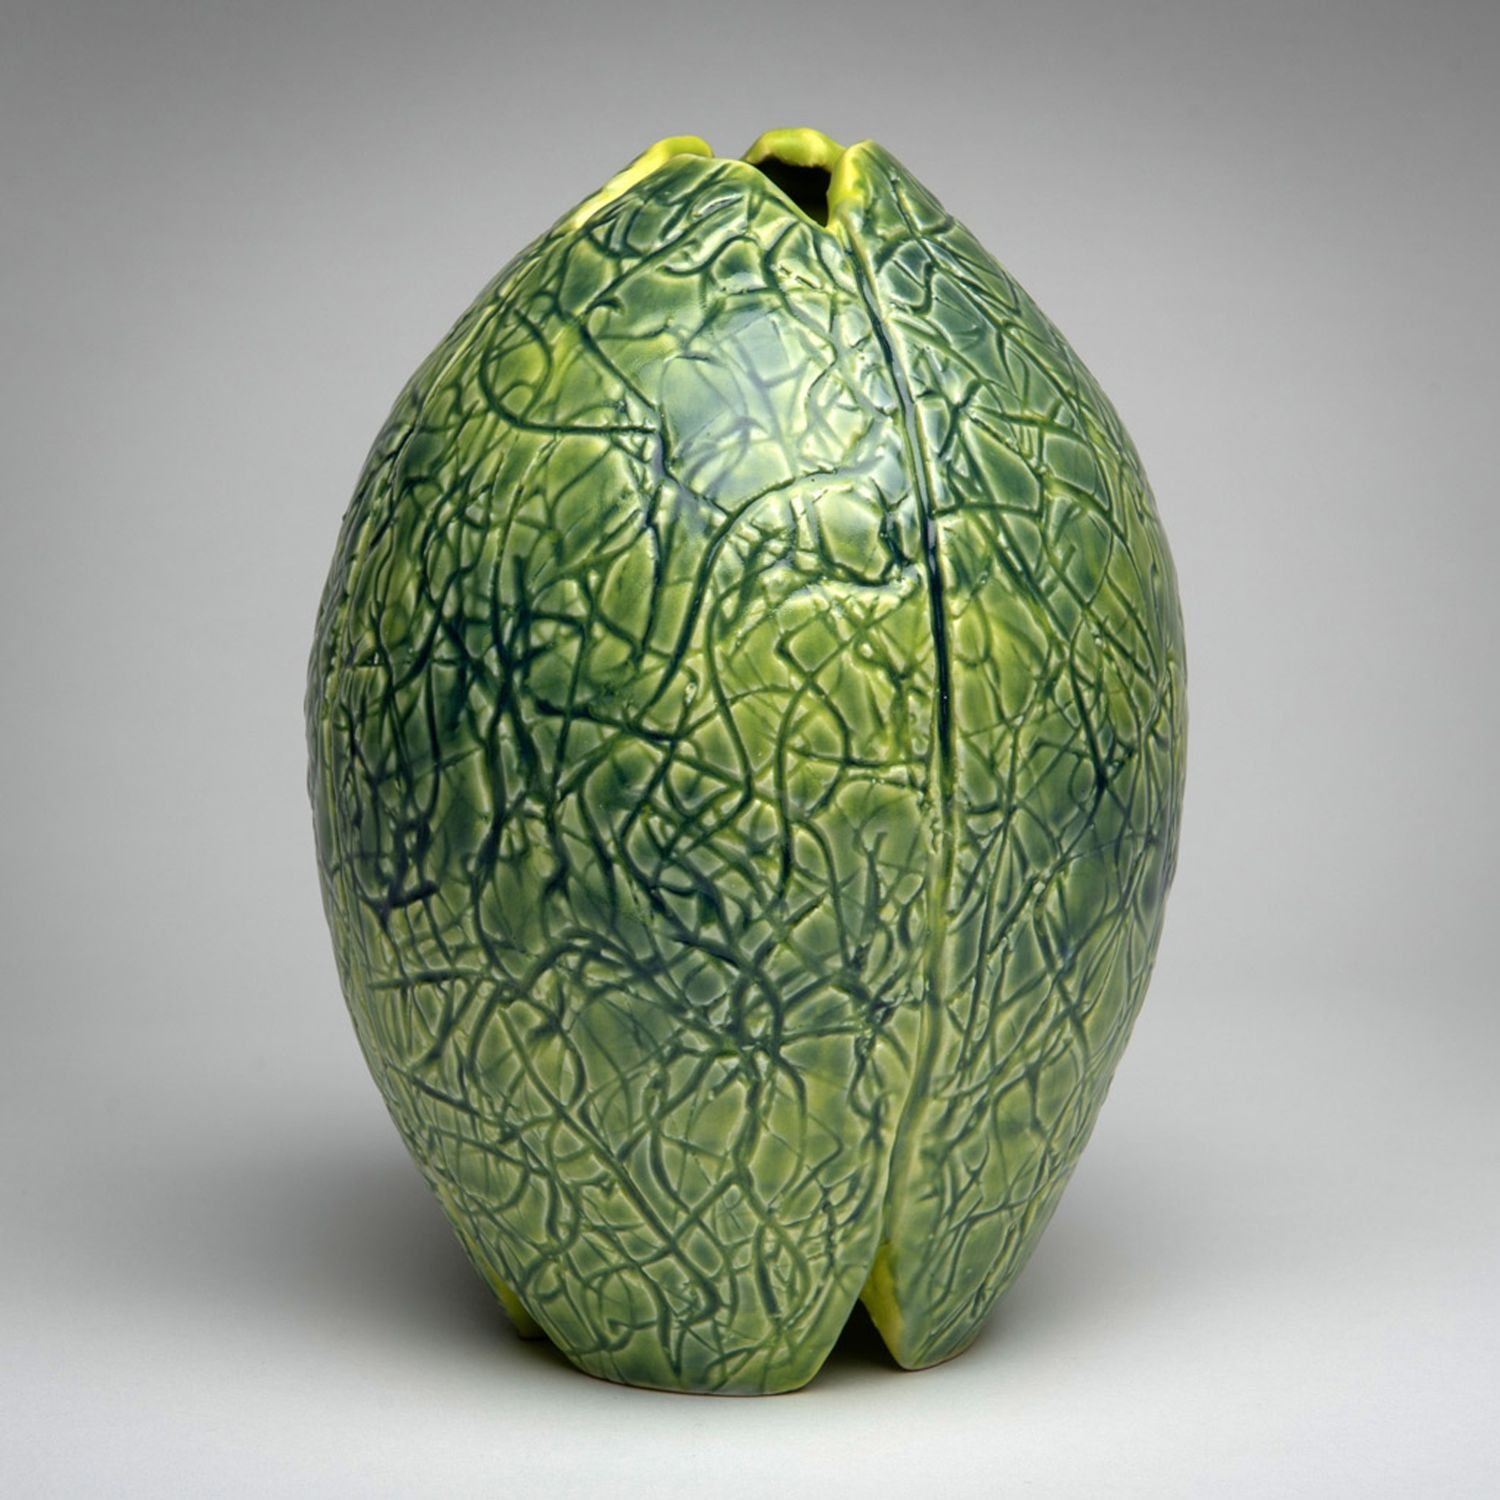 Arlene Kushnir: Green Chartreuse Vase Product Image 1 of 2